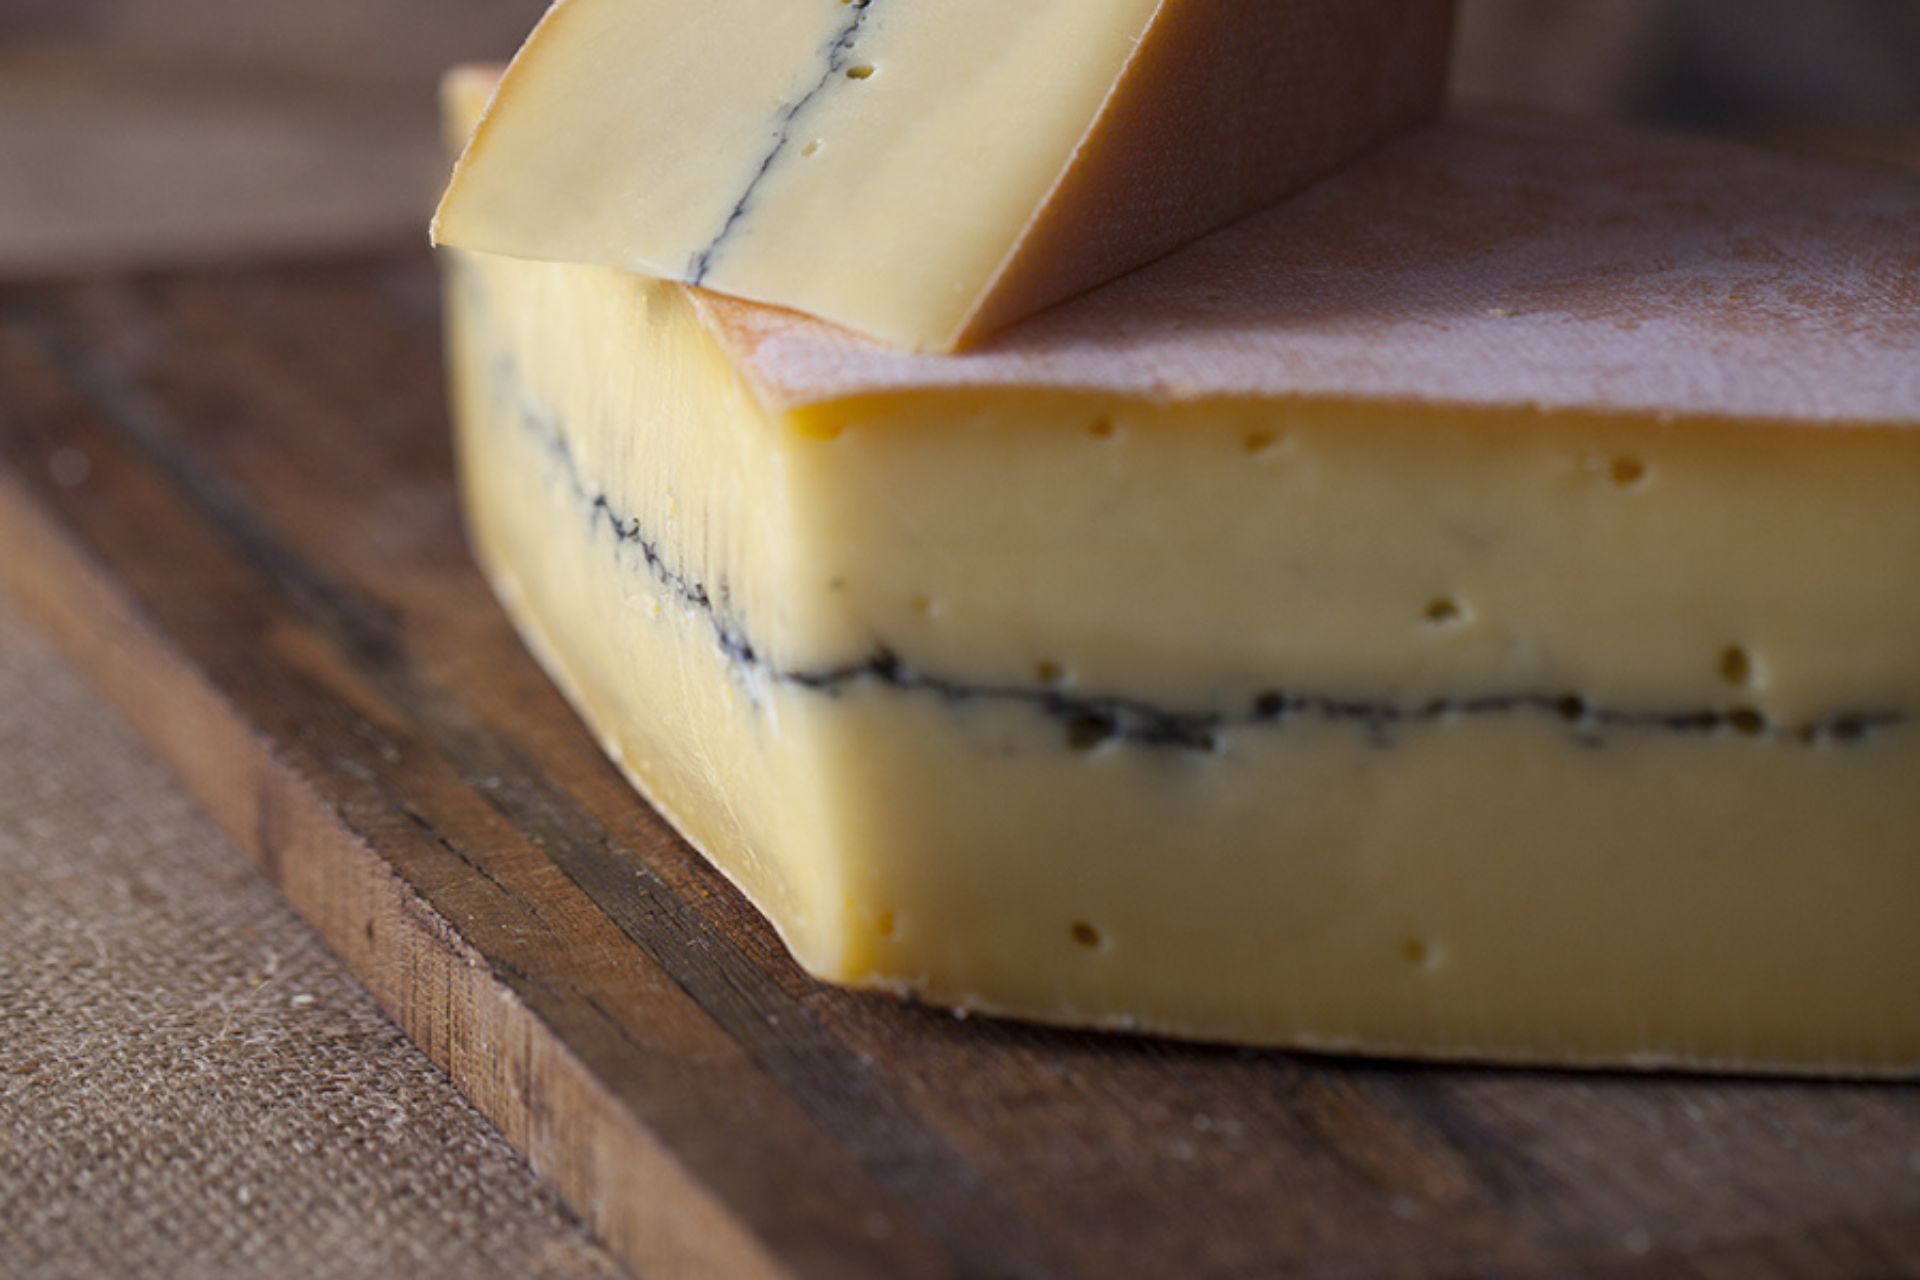 haut-doubs-morbier-fromage-cendre-lait-gppr-lukam-pictures-11554